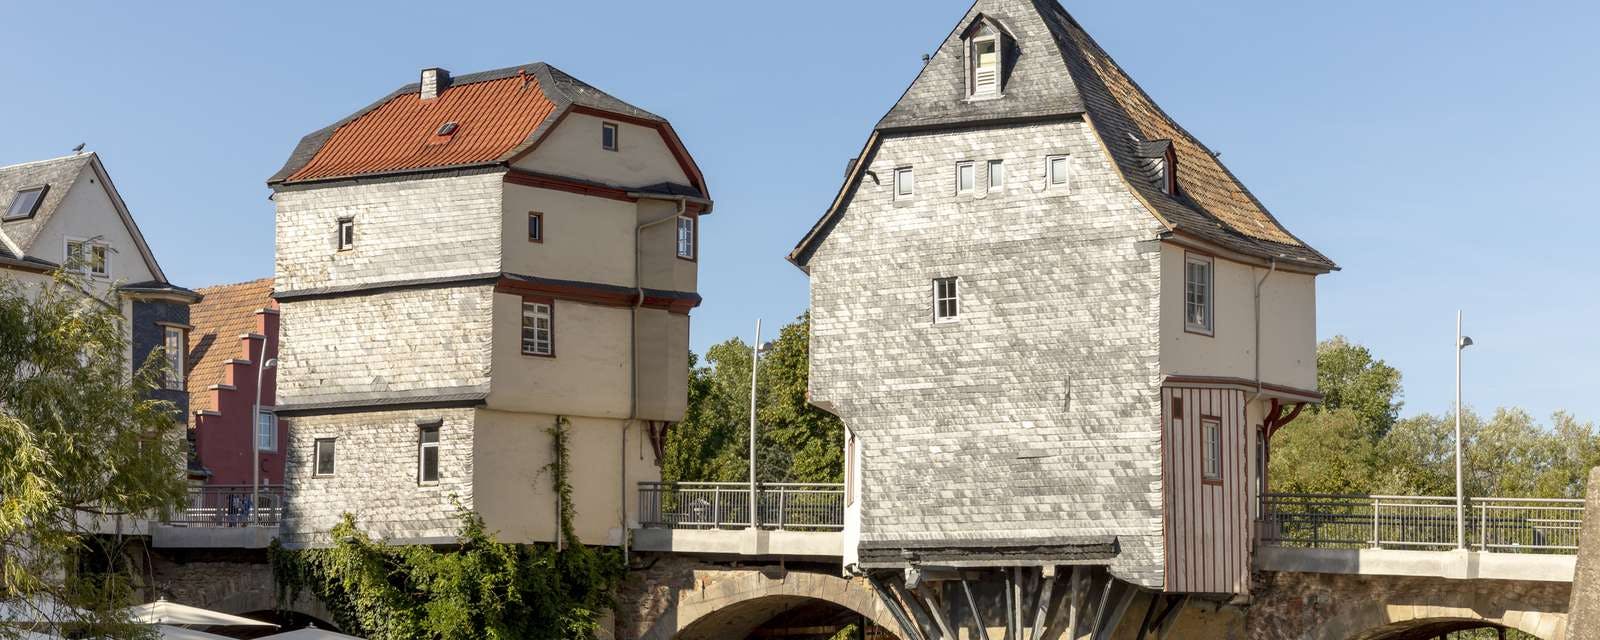 Brückenhäuser in Bad Kreuznach